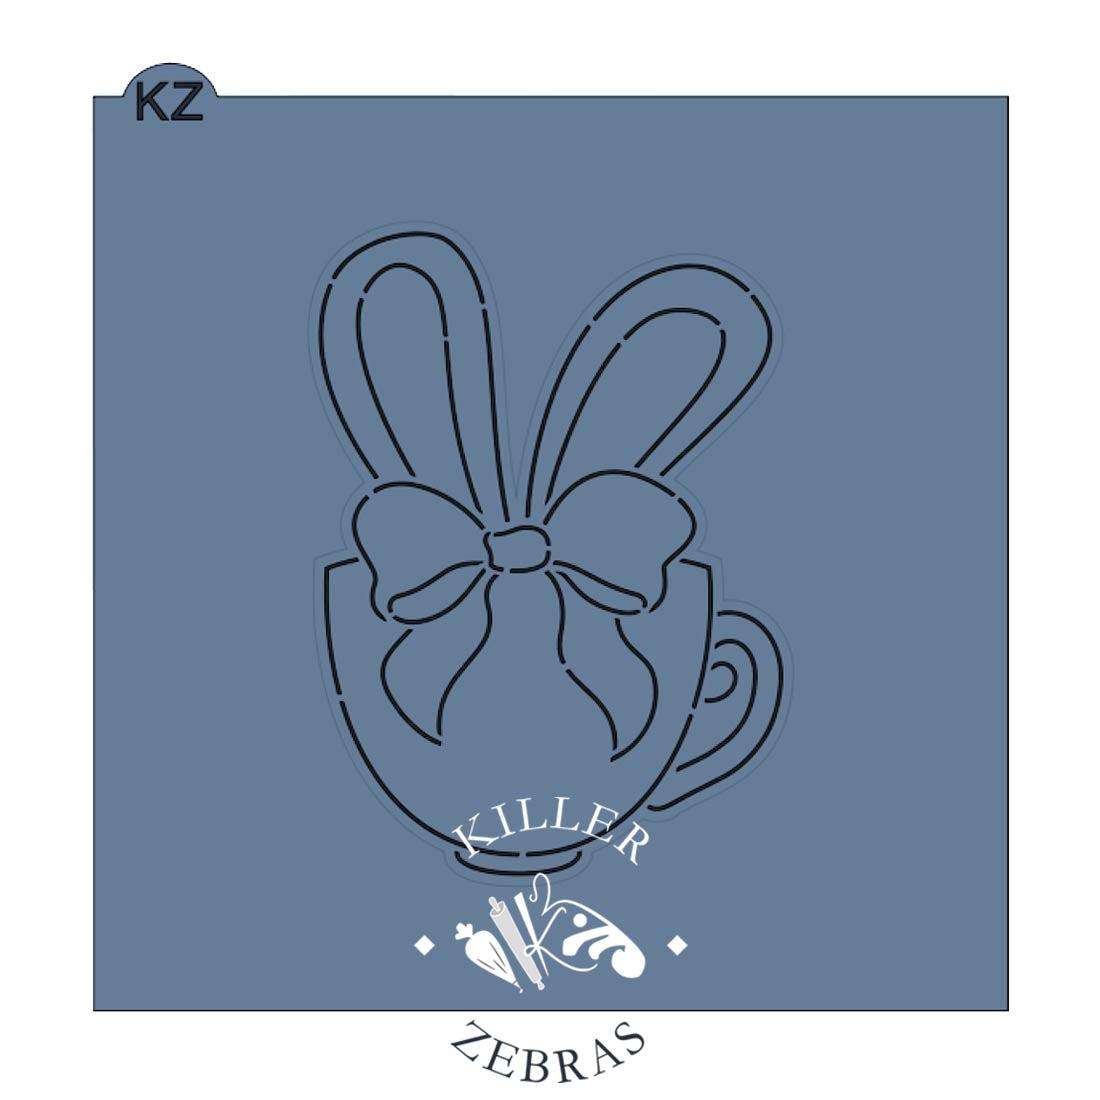 Teacup Bunny Ears Cutter/Stencil